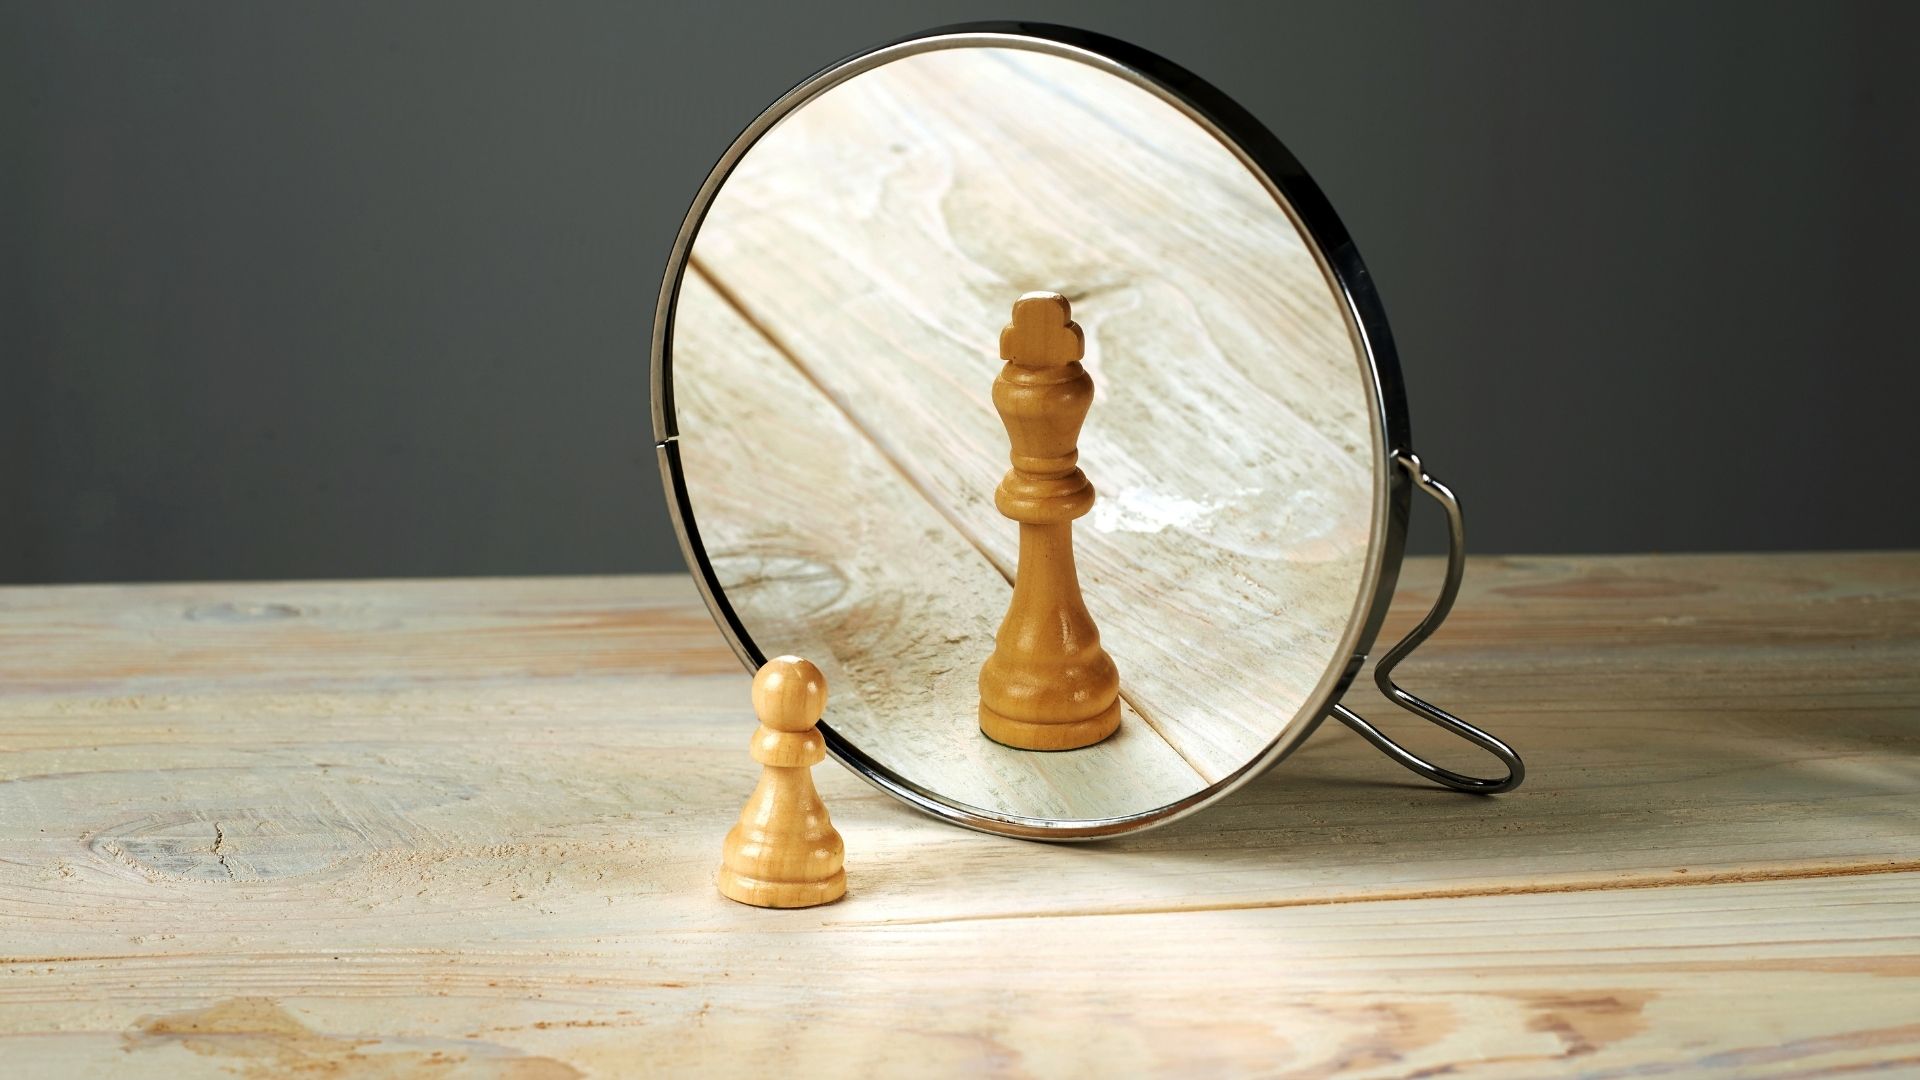 pieza peón de ajedrez mirándose al espejo reflejado como una reina